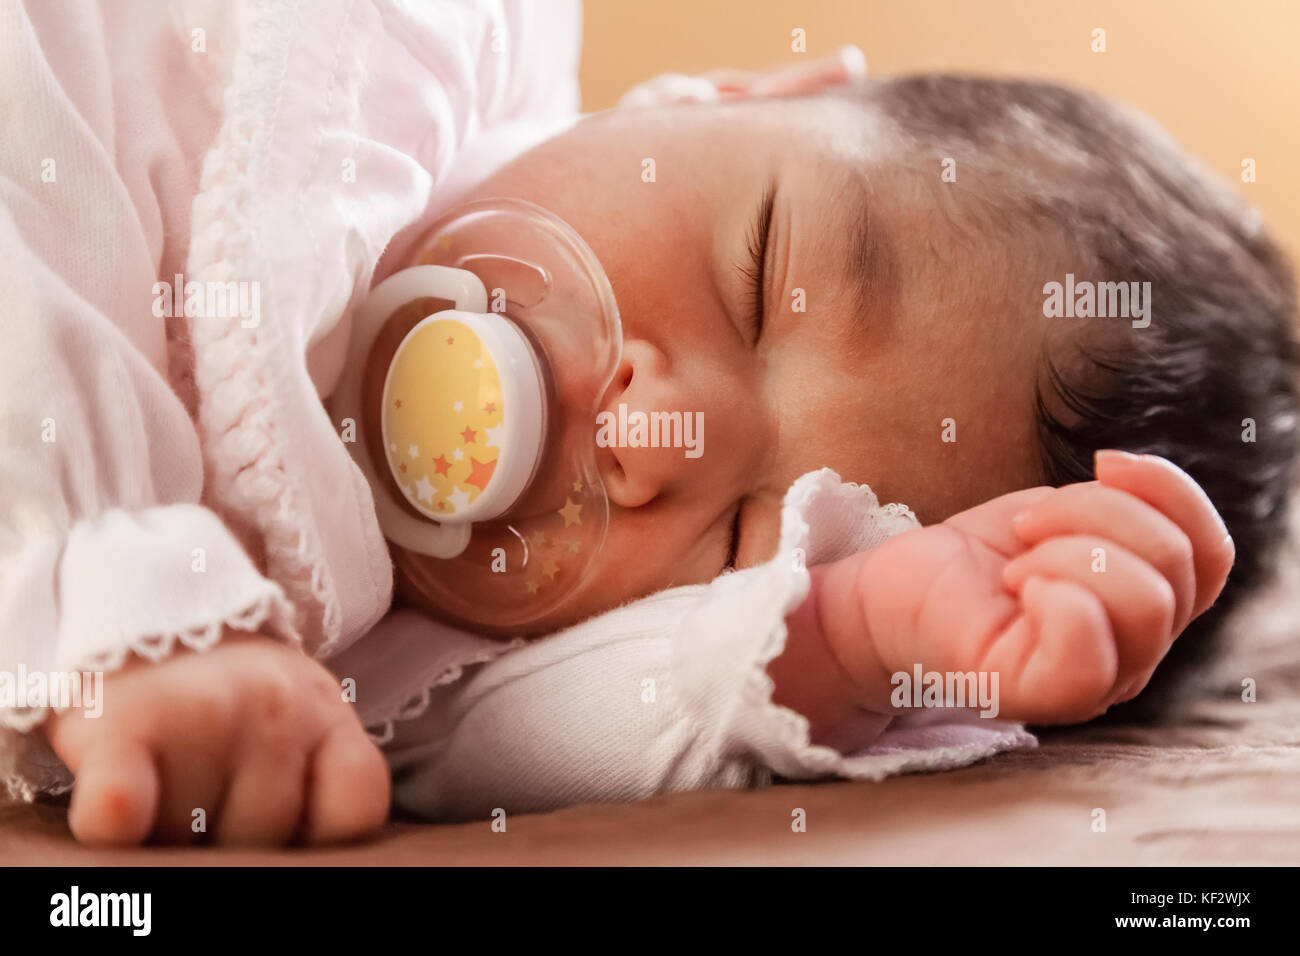 Close up portrait of a cute deux semaines Naissance bebe Fille portant des vêtements en tricot rose tendre, dormir paisiblement avec une tétine, sucette ou factice aka Banque D'Images